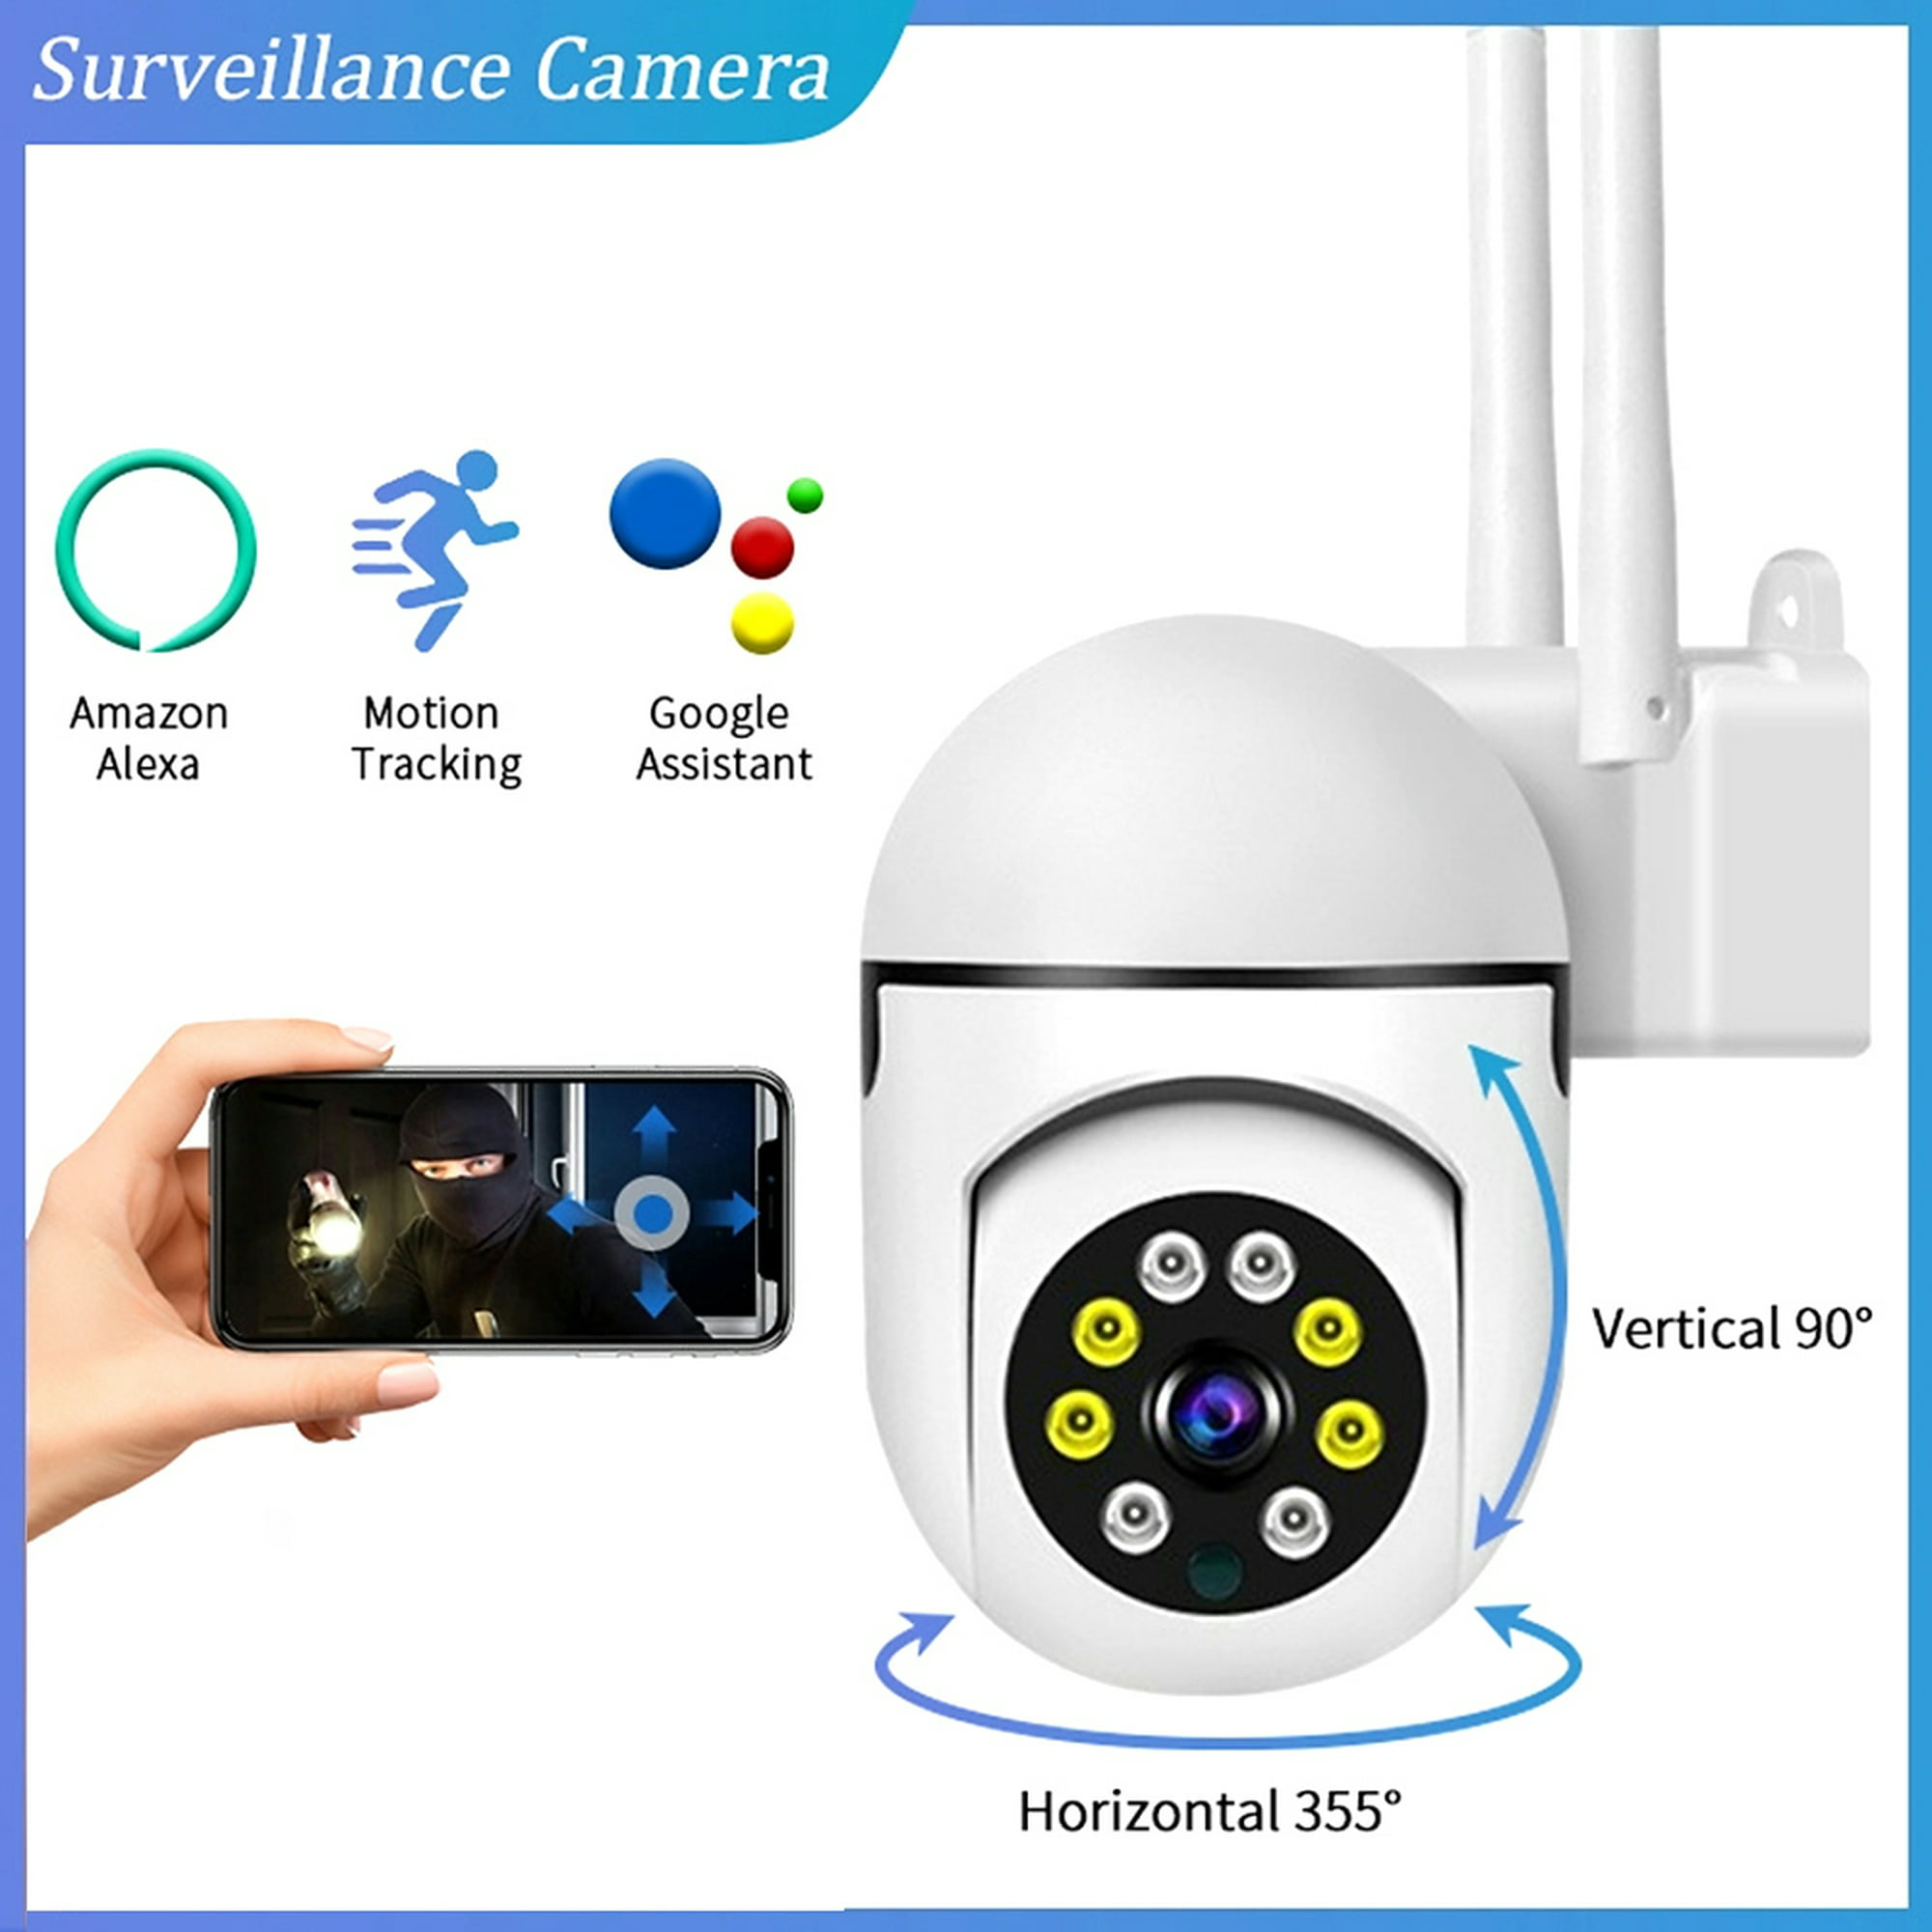  Cámara de seguridad de bombilla inteligente 1080P, cámara  panorámica de 360 grados 2.4G WiFi para interiores y exteriores, cámara IP  de videovigilancia inalámbrica para bebé/mascota con visión nocturna, audio  bidireccional, detección